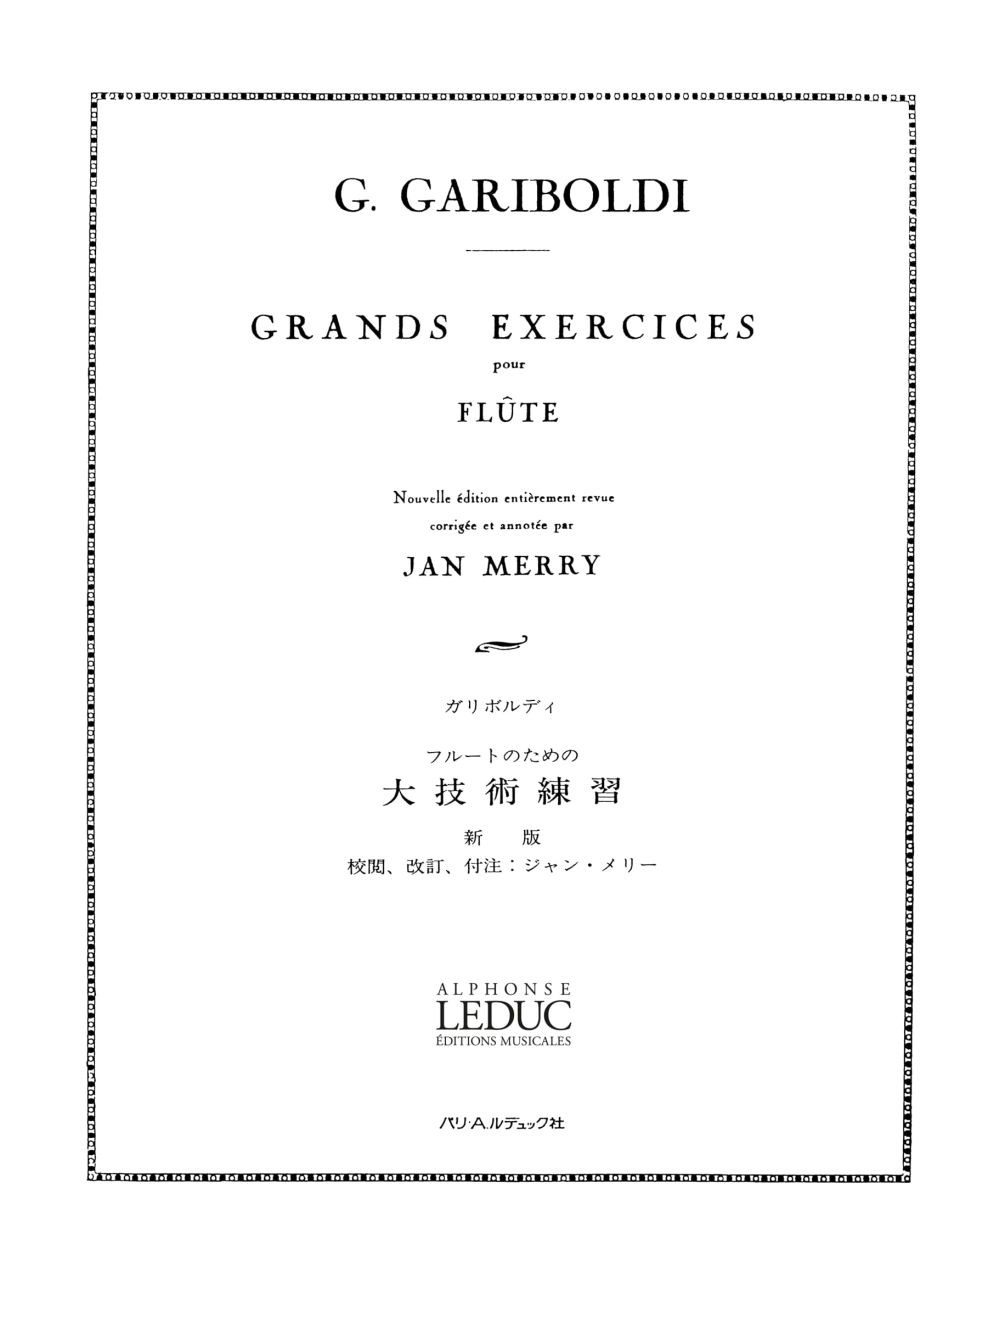 Grands exercices pour flûte, op. 139